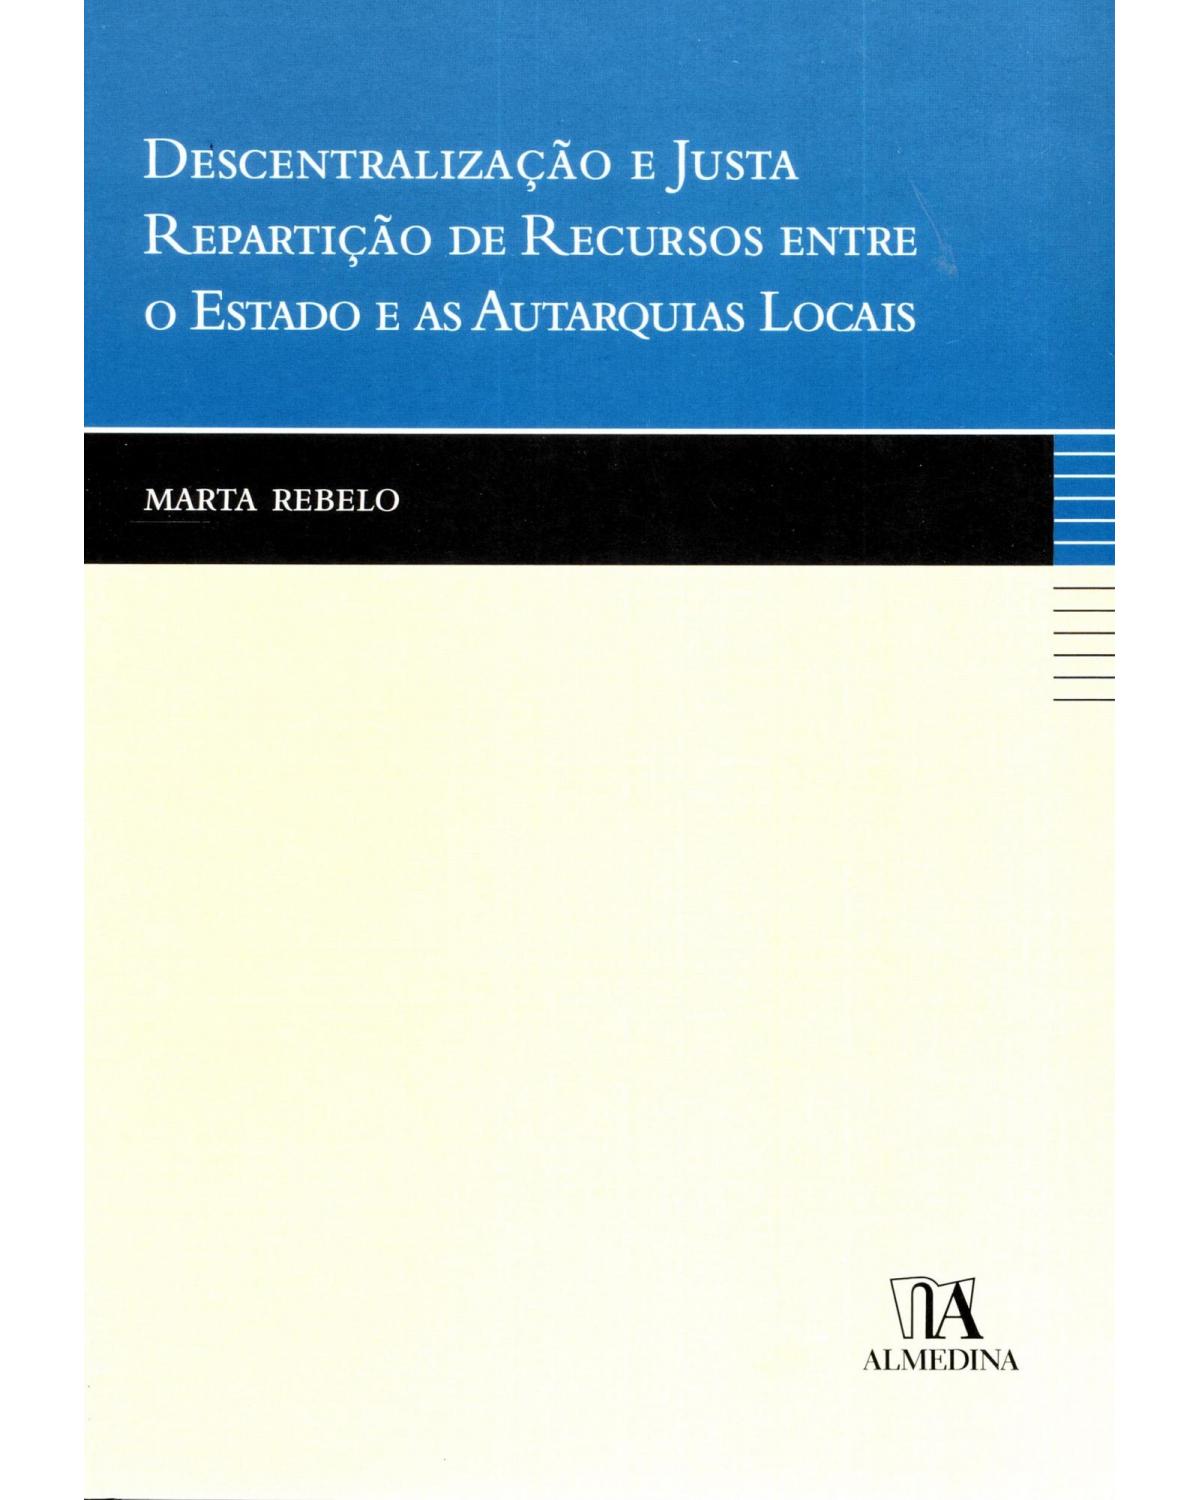 Descentralização e justa repartição de recursos entre o estado e as autarquias locais - 1ª Edição | 2007